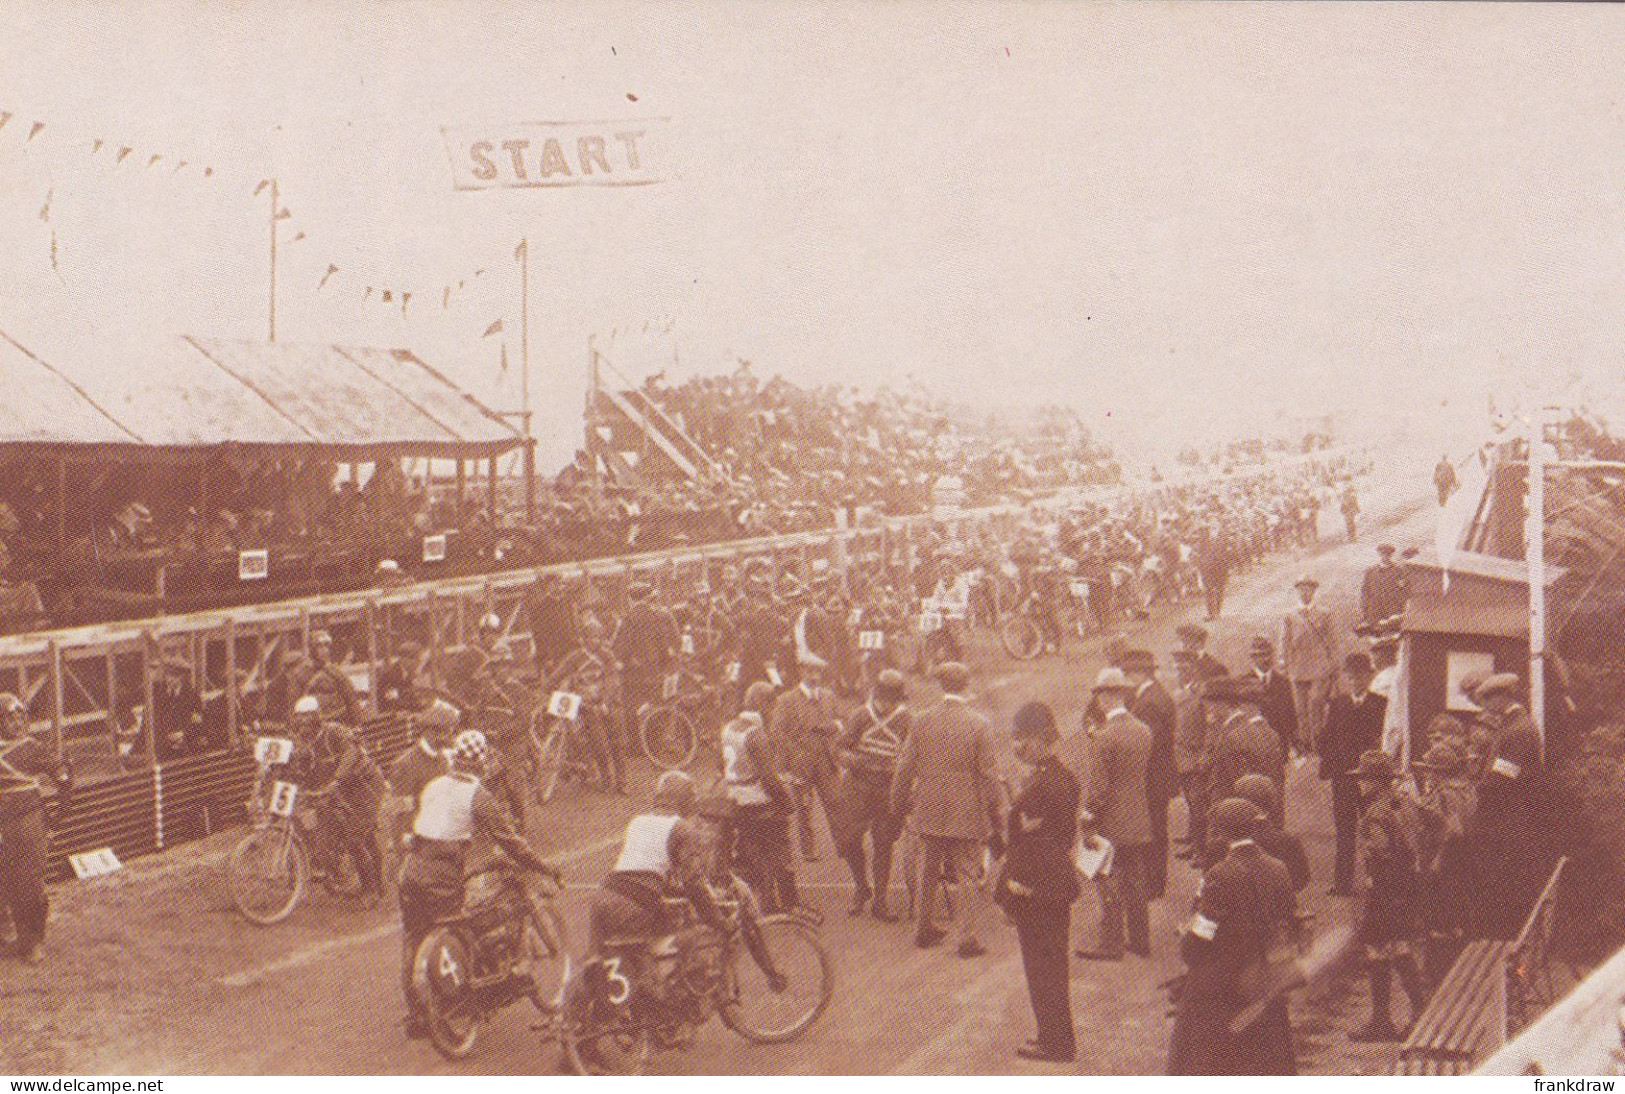 Nostalgia Postcard - Junior TT Race, 1914  - VG - Sin Clasificación